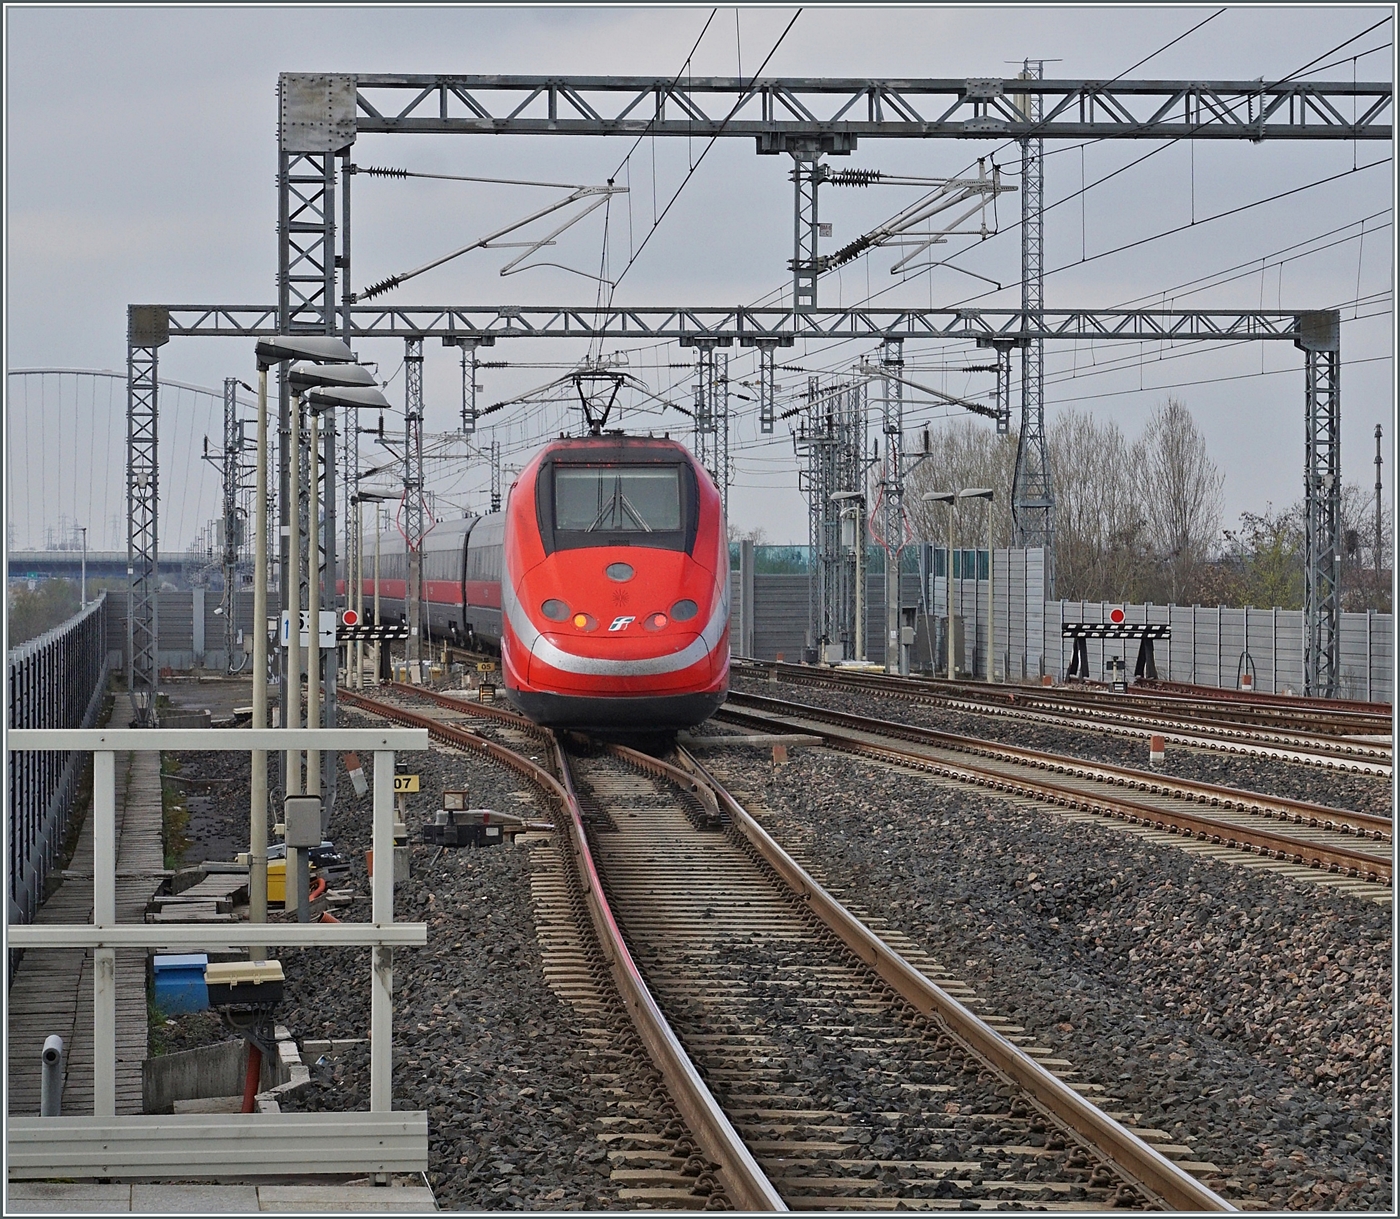 Nach einem kurzen Halt verlässt ein FS Trenitalia ETR 500 den Bahnhof von Reggio Emilia AV. 

14. März 2023